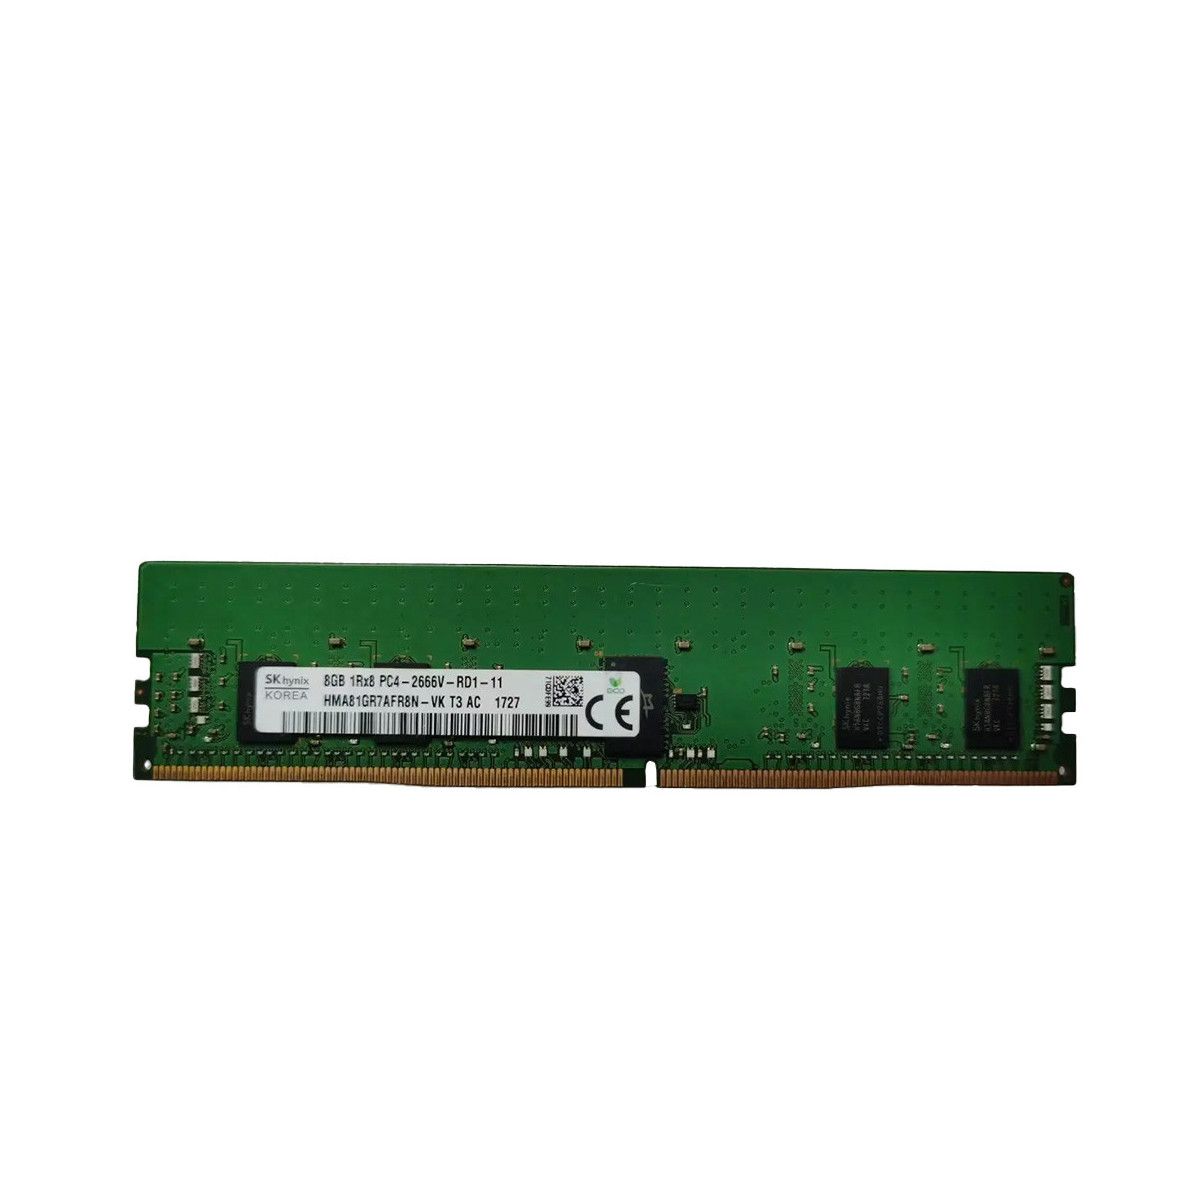 T9V39AA-MS - Mem-star 1x 8GB DDR4-2400 RDIMM PC4-19200T-R - Memstar OEM compatible Memoria 1 - Memstar 